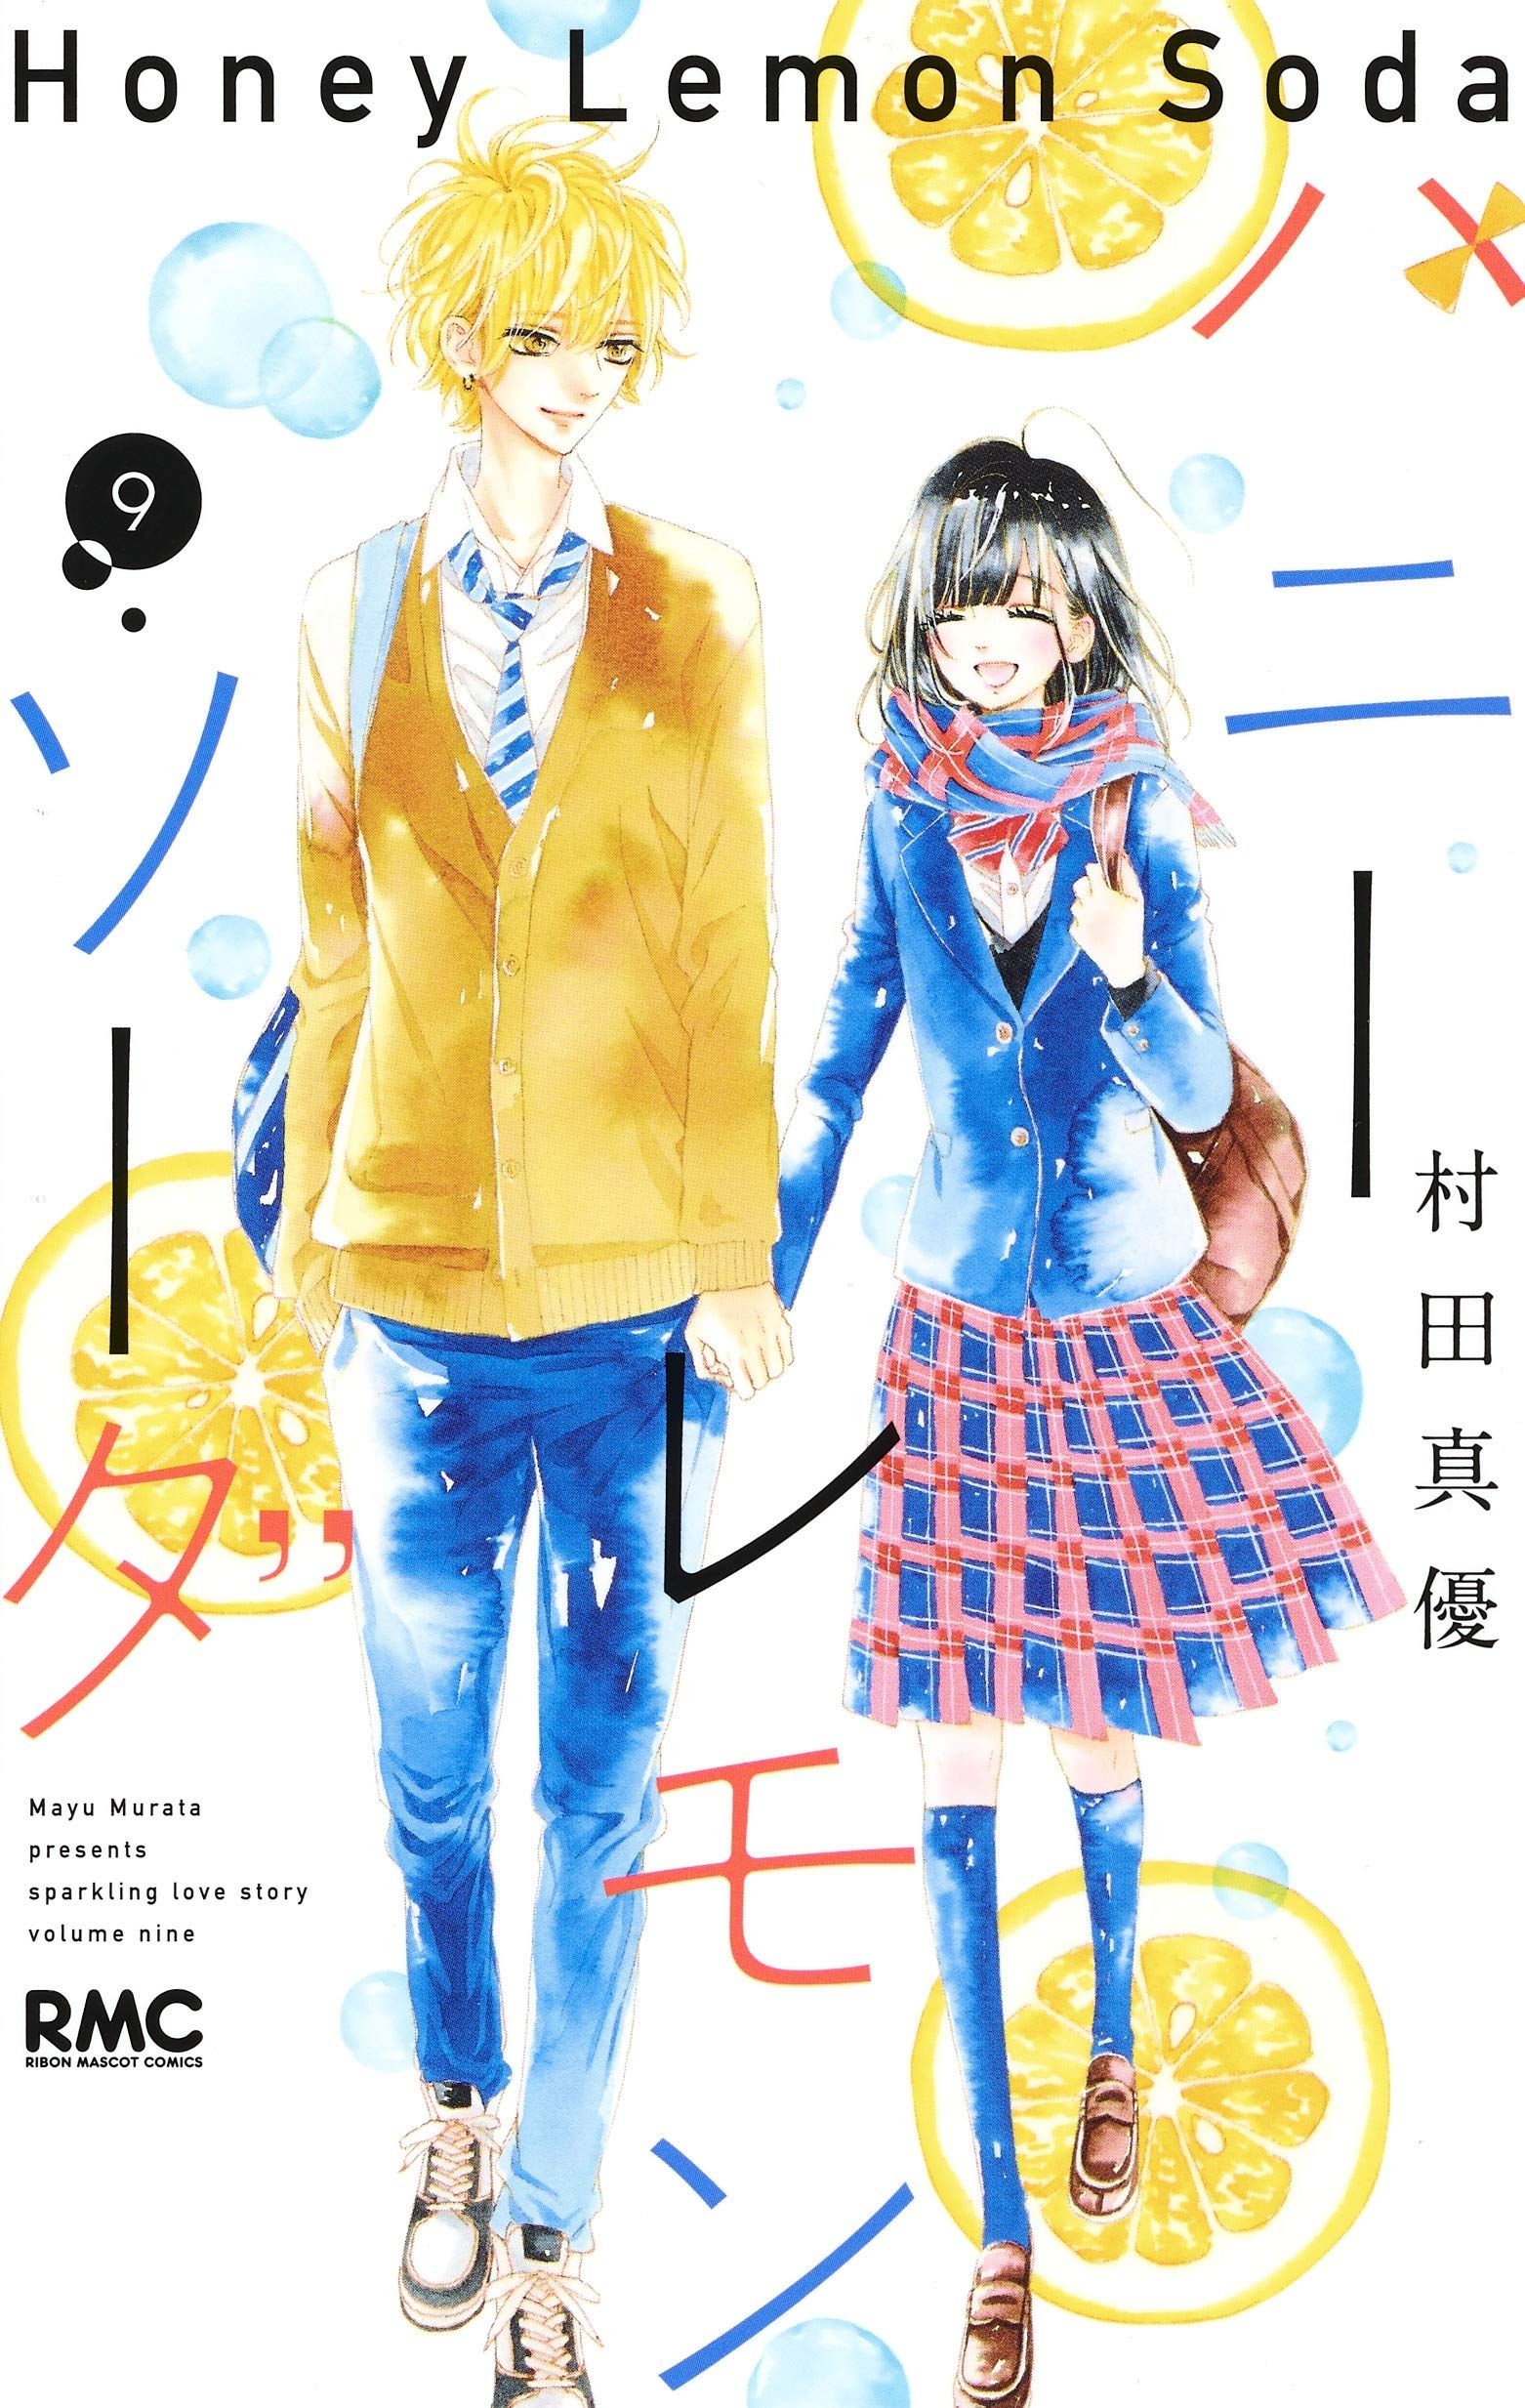 Honey Lemon Soda Manga 72 Manga VO Honey Lemon Soda jp Vol.9 ( MURATA Mayu MURATA Mayu ) ハニーレモン